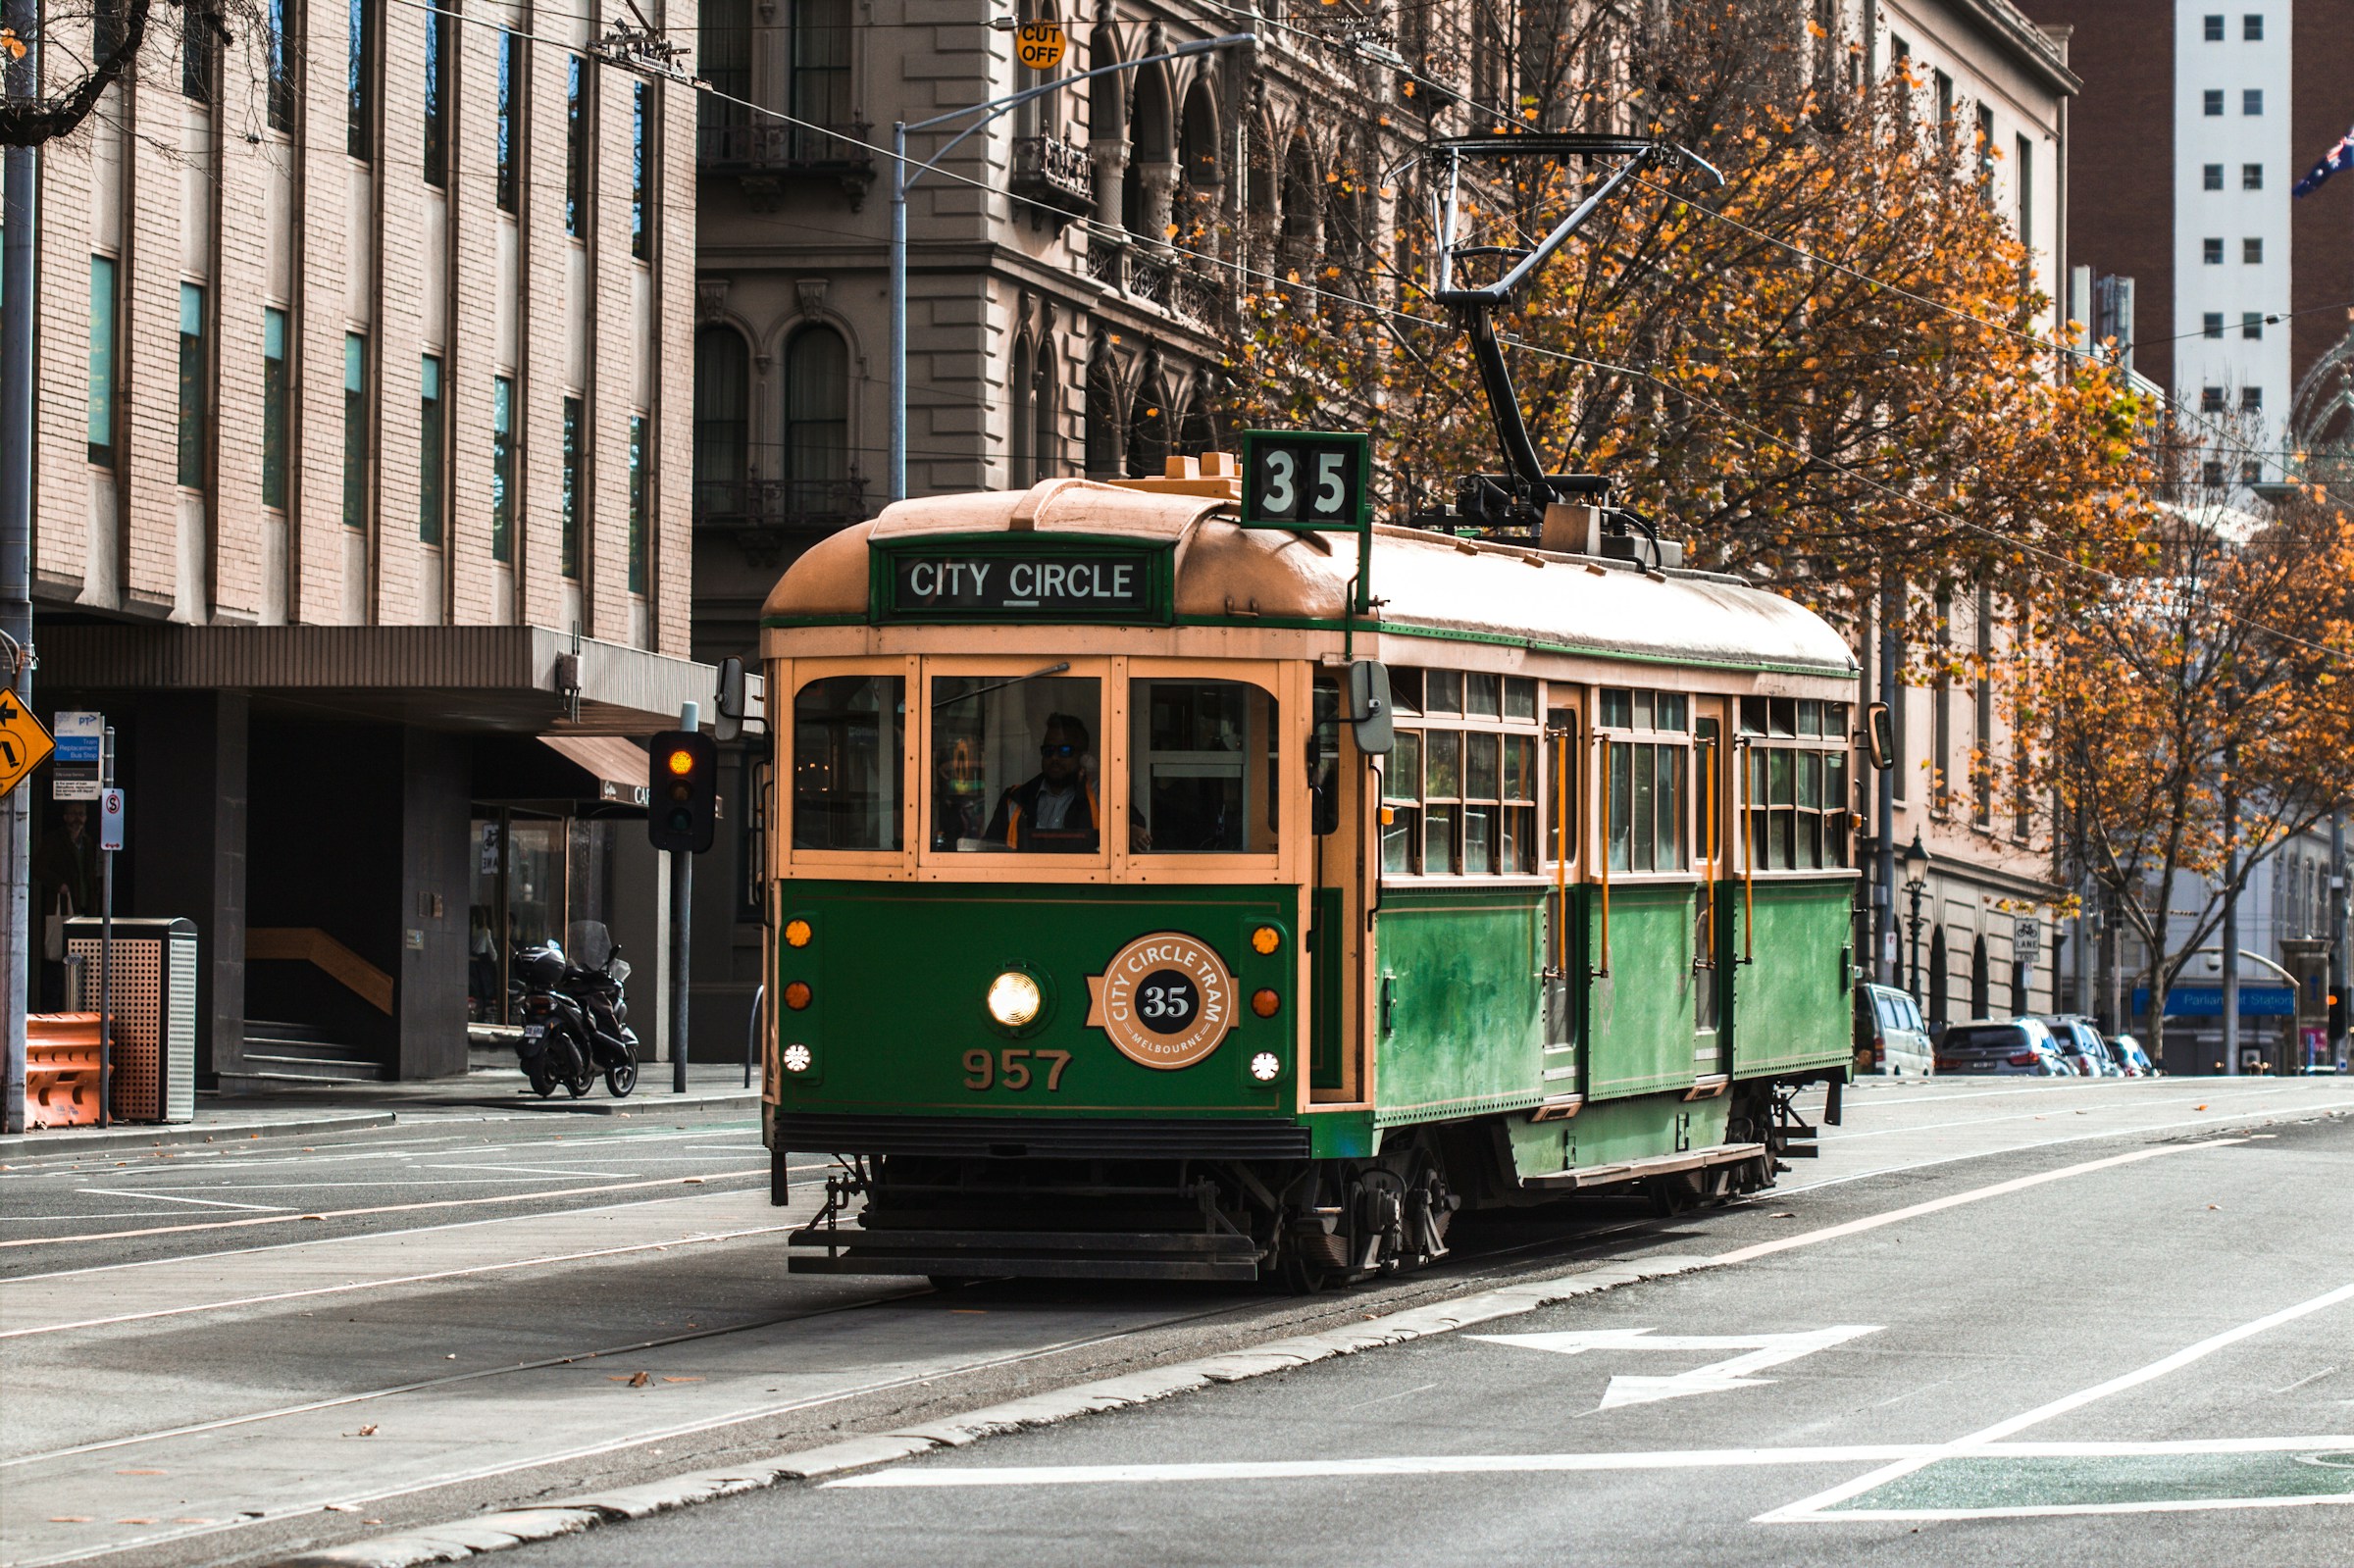 Grön och gul gammaldags spårvagn märkt "City Circle" kör på gata i Melbourne med höstträd och byggnader i bakgrunden.